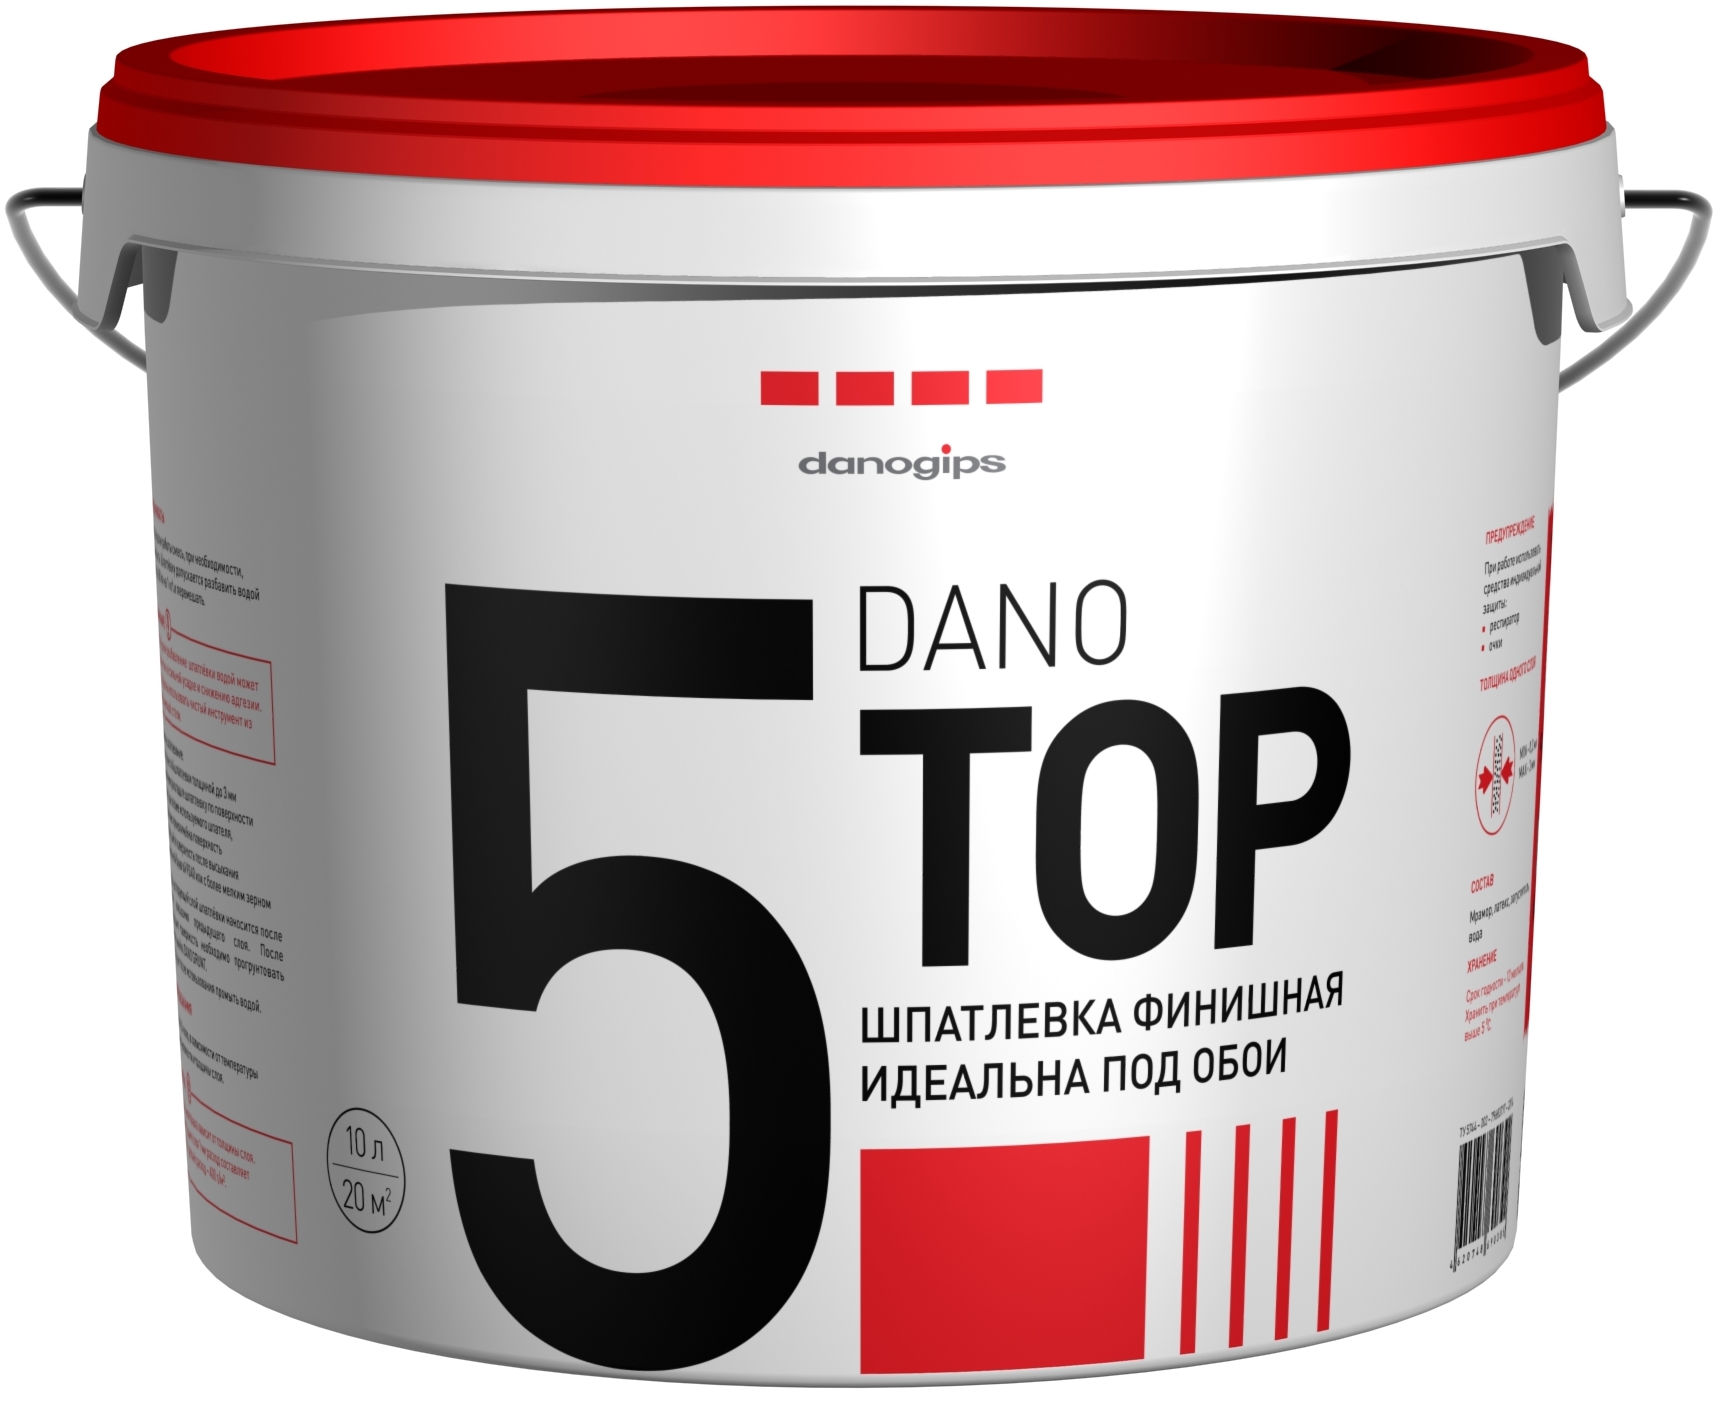 Купить Danogips Dano Top 5, 3.5 л